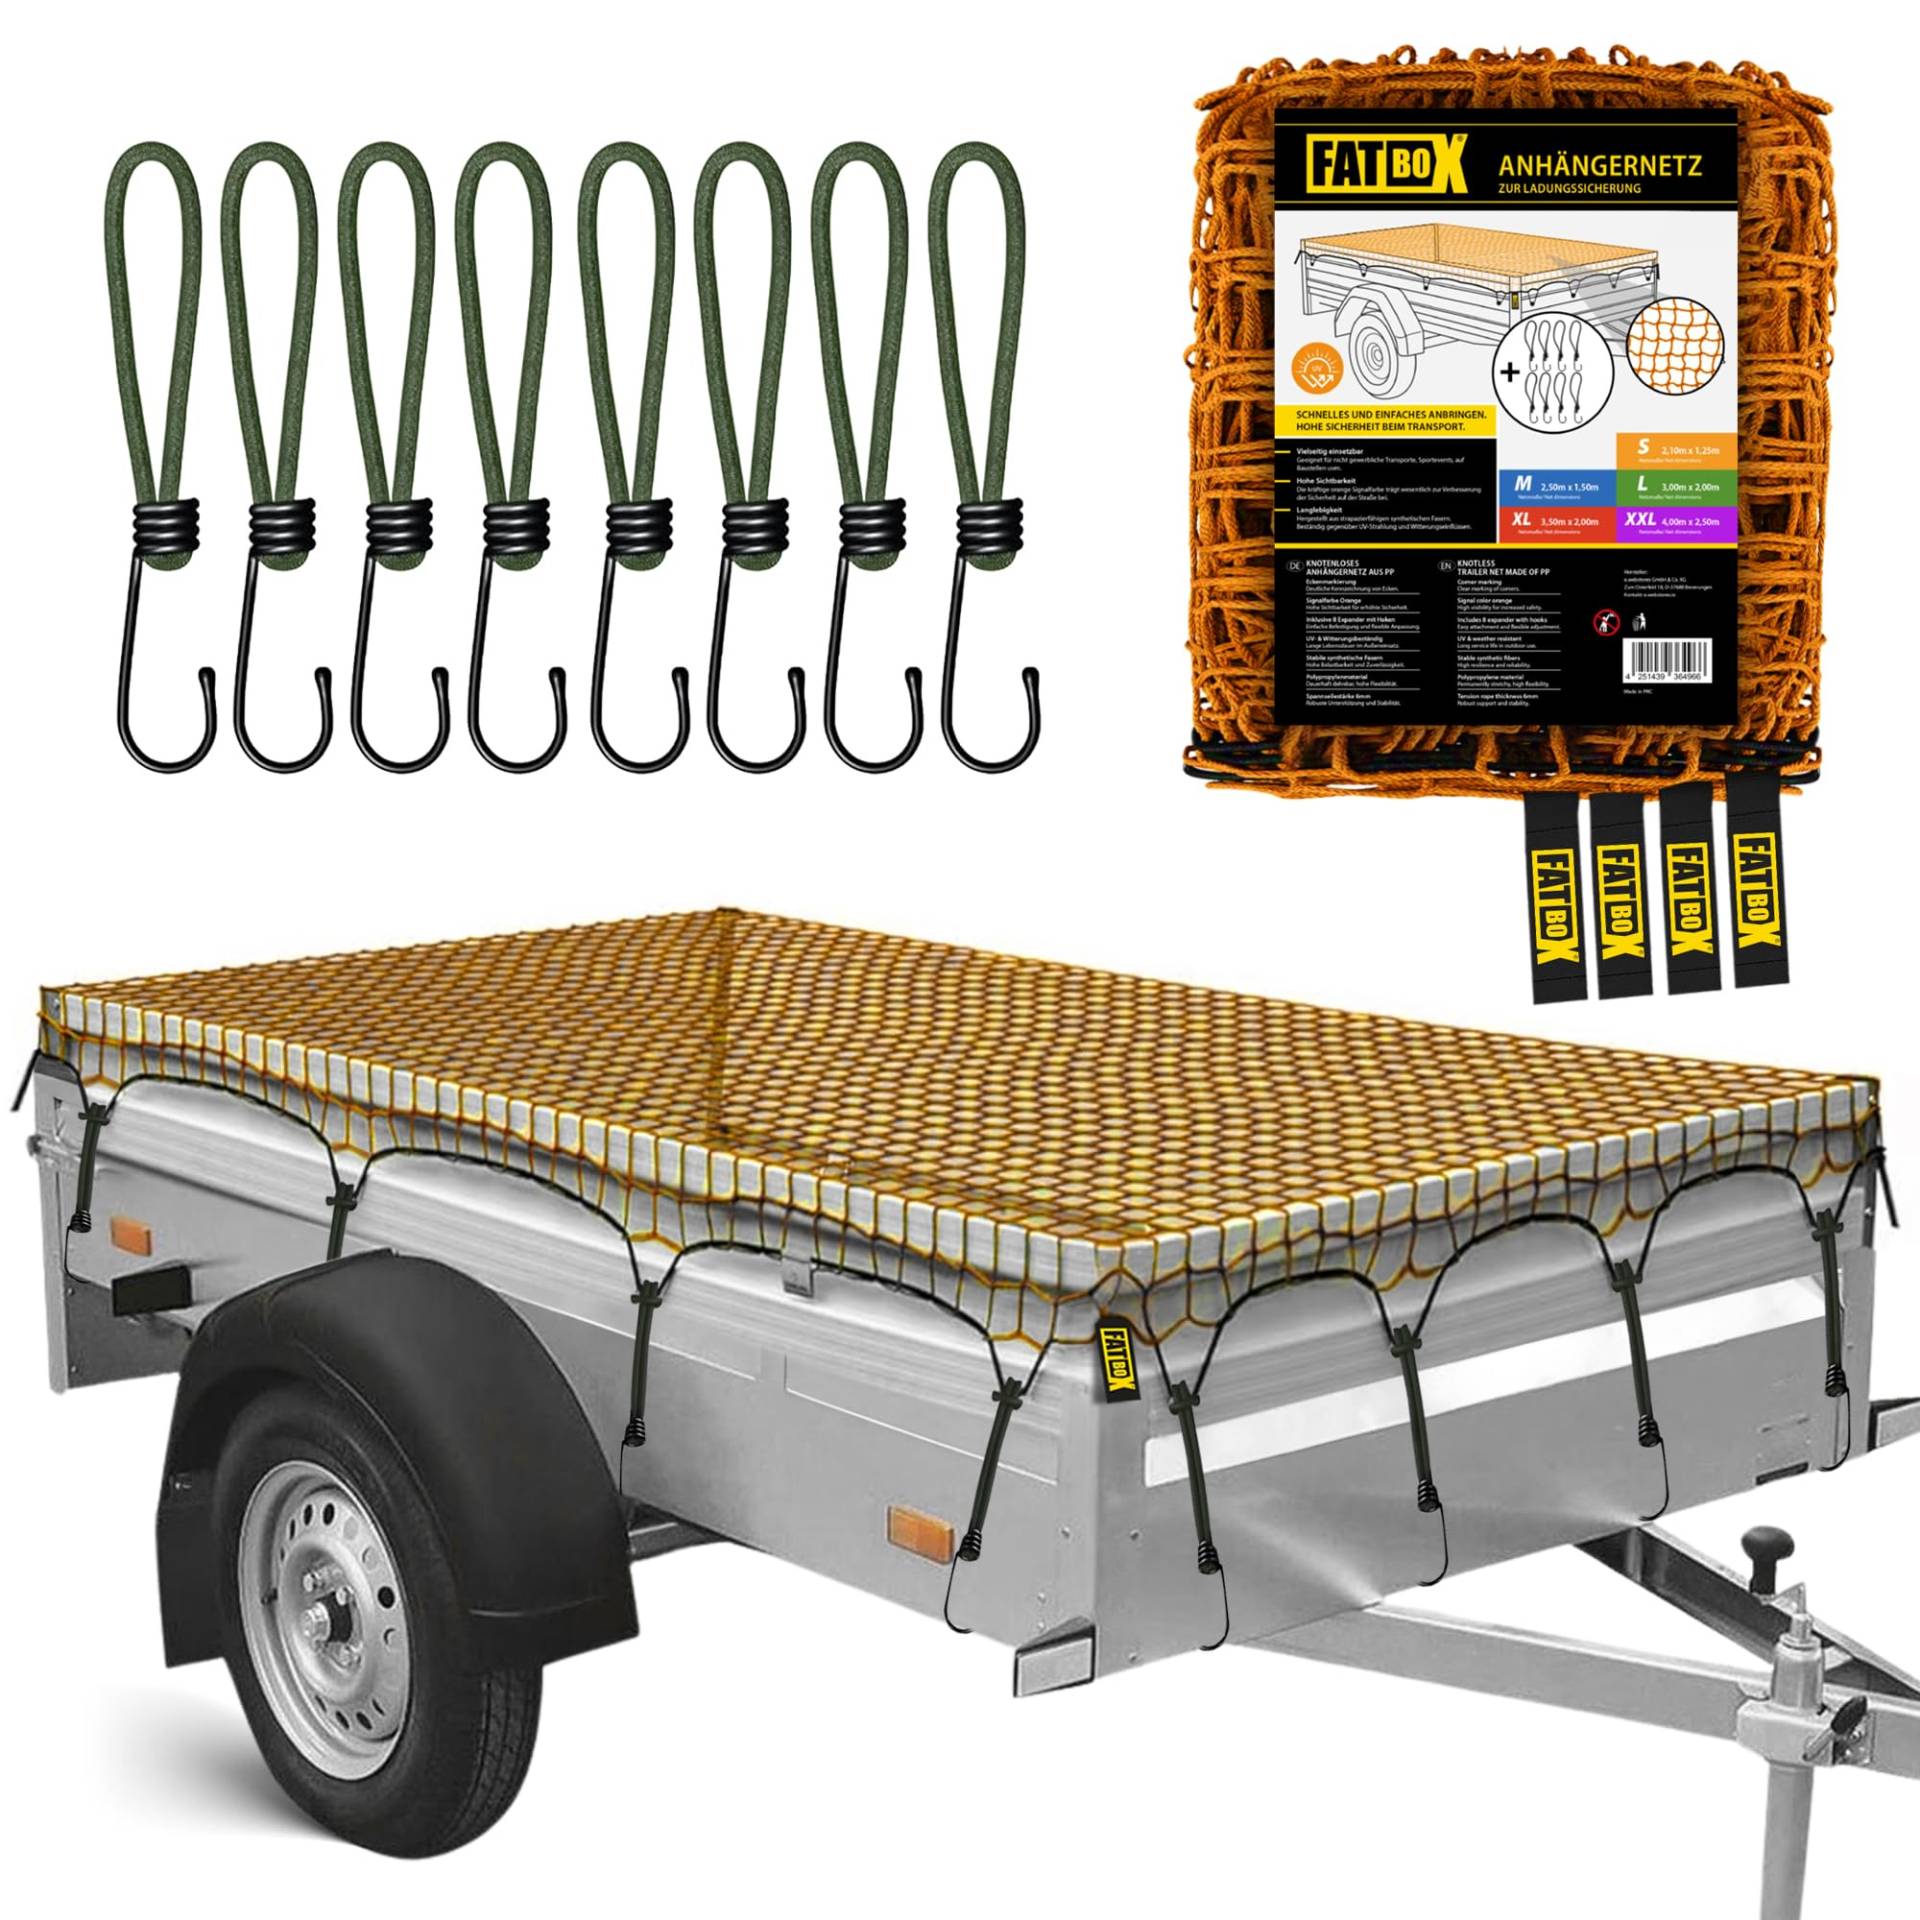 FATBOX Anhängernetz - DEHNBAR & ROBUST - Ladegutsicherung für Anhänger 1x2m bis 2x3m - UV-beständig - 4mm Kordel - Maschenweite 4cm (XL - 3,50 x 2,00 m) von FATBOX